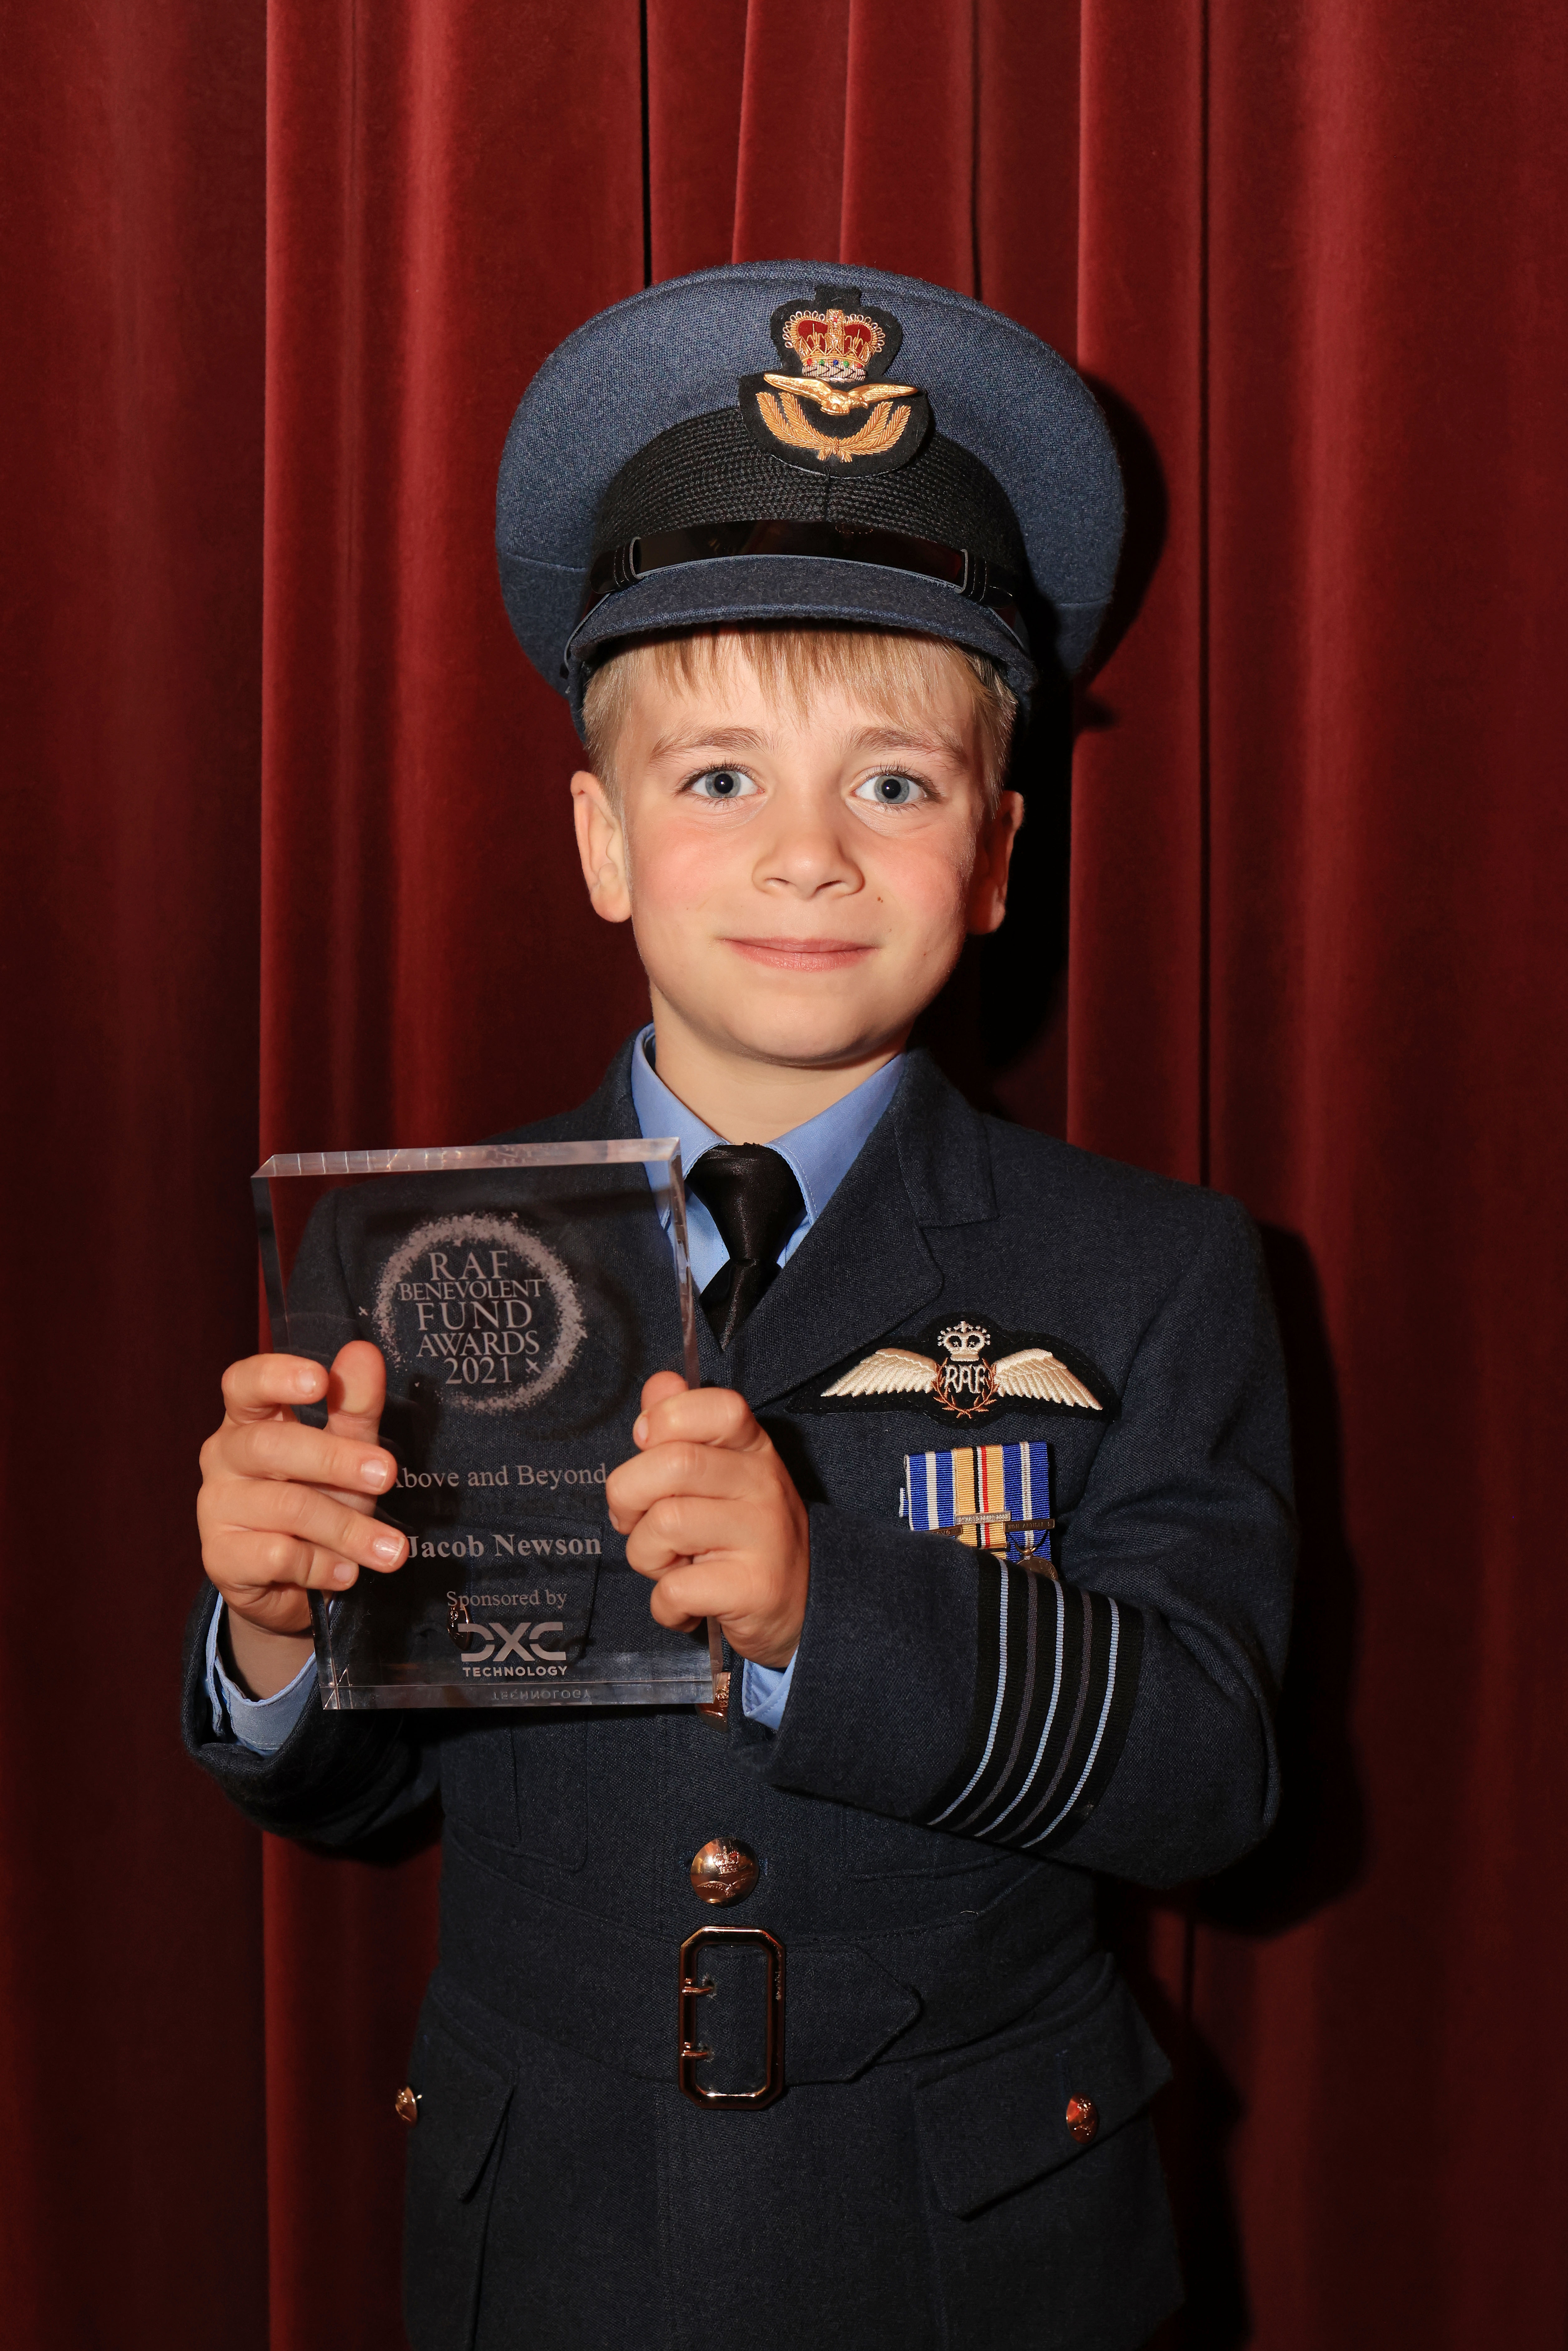 Jacob holds his award.